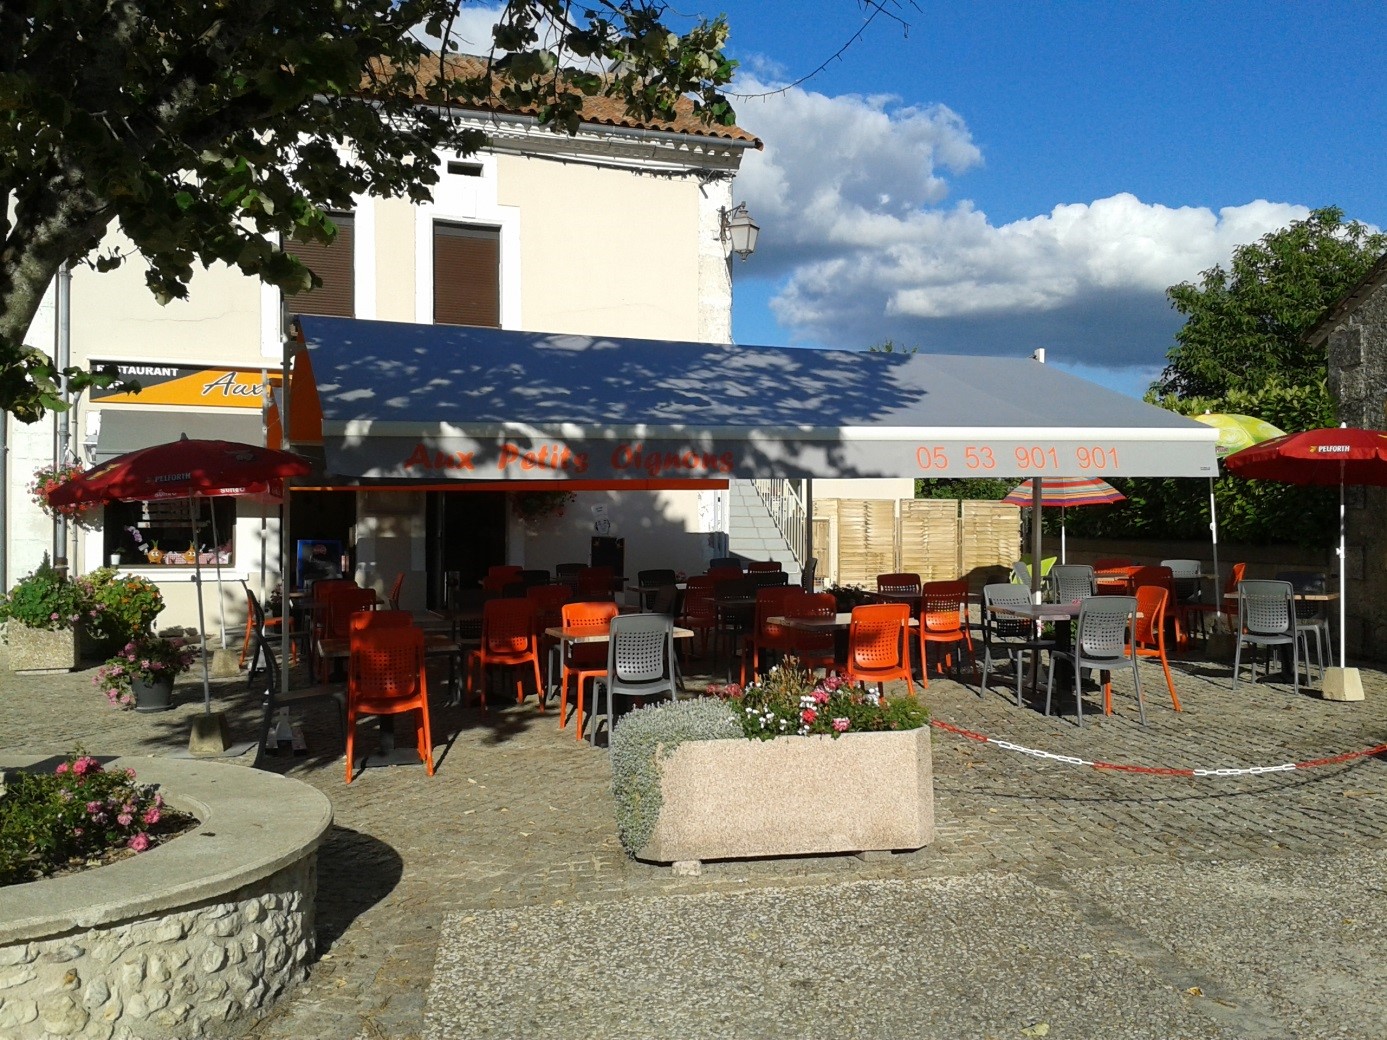 Location Bar-Restaurant (Communauté de communes du Périgord Ribéracois) – commune Bertric-Burée